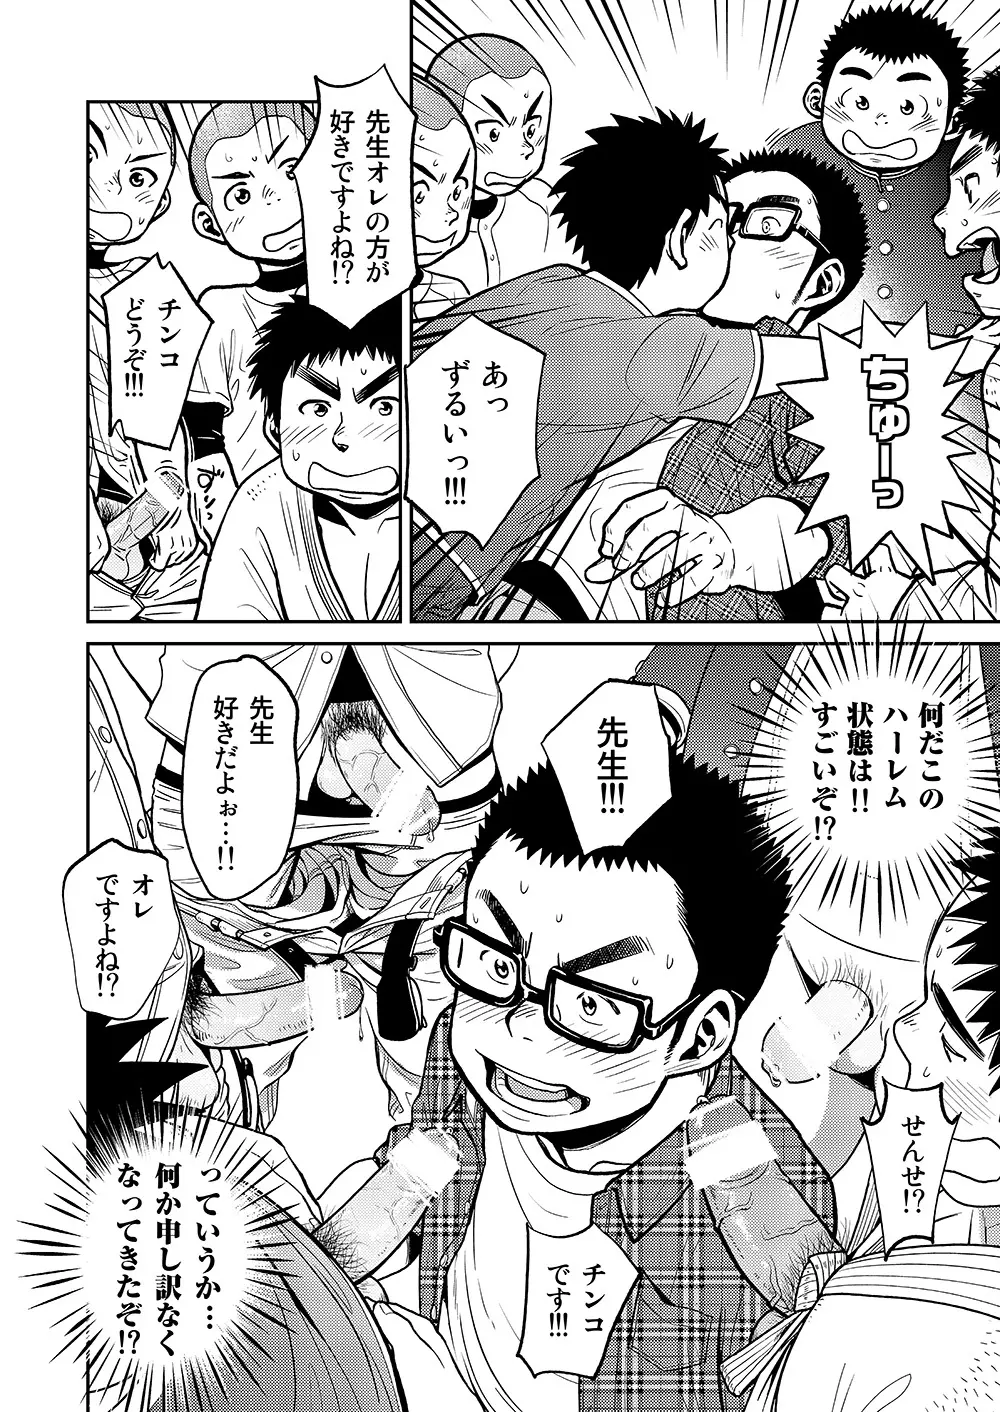 漫画少年ズーム VOL.11 & 12 48ページ